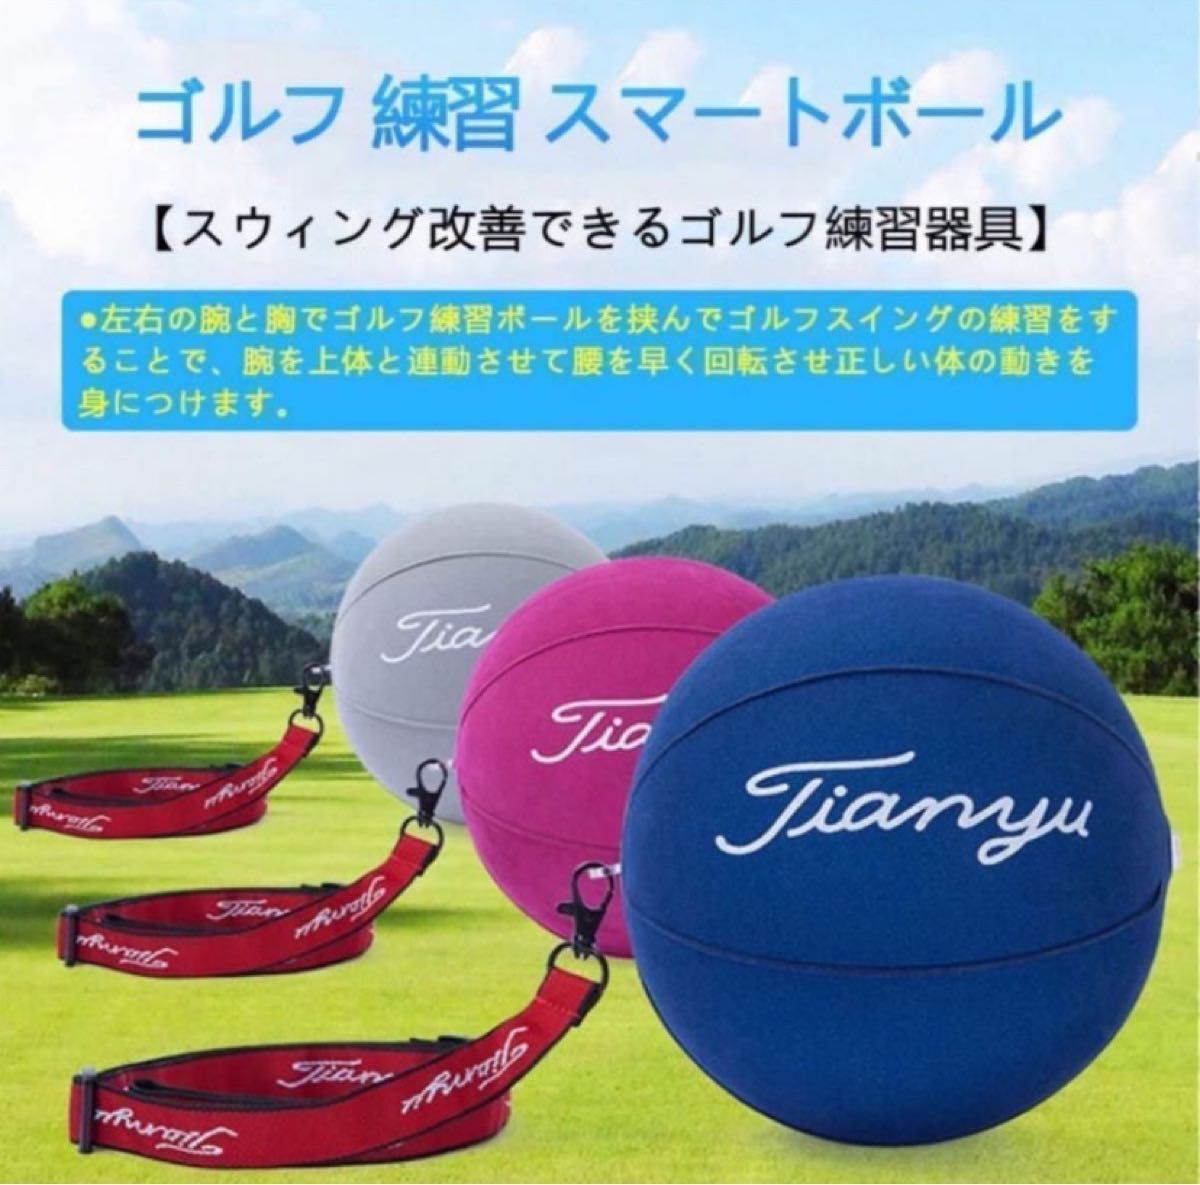 ゴルフ スイング 矯正 ボール トレーニング用品 エアポンプ付き グレー